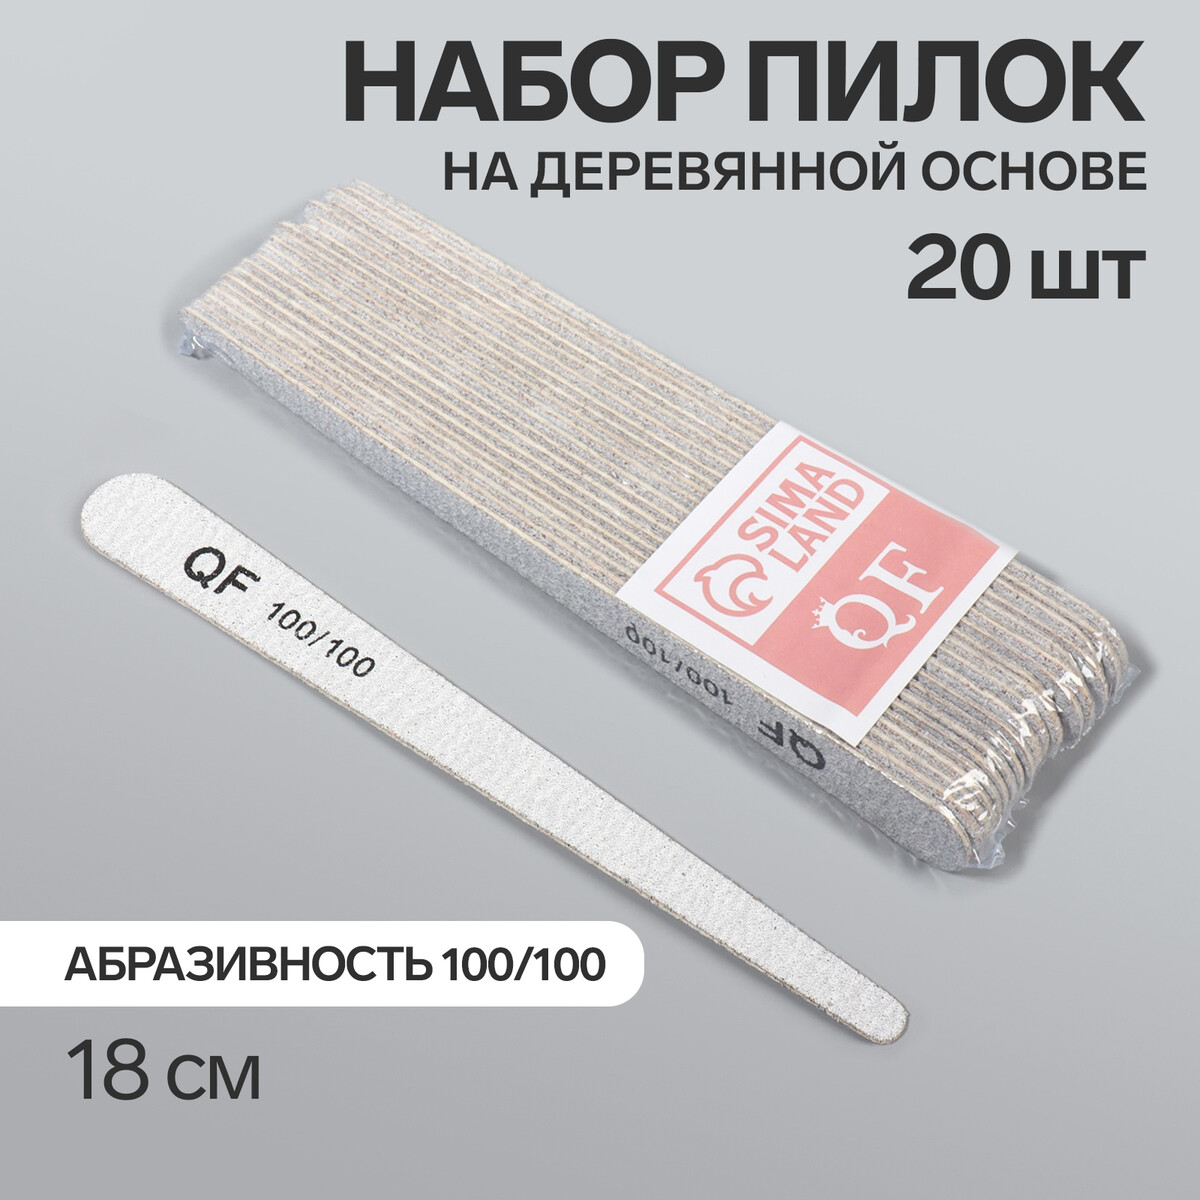 Пилка-наждак, набор 20 шт, деревянная основа, абразивность 100/100, 18 см, цвет серый основа и сменные файлы для пилки 18 см абразивность 240 10 шт